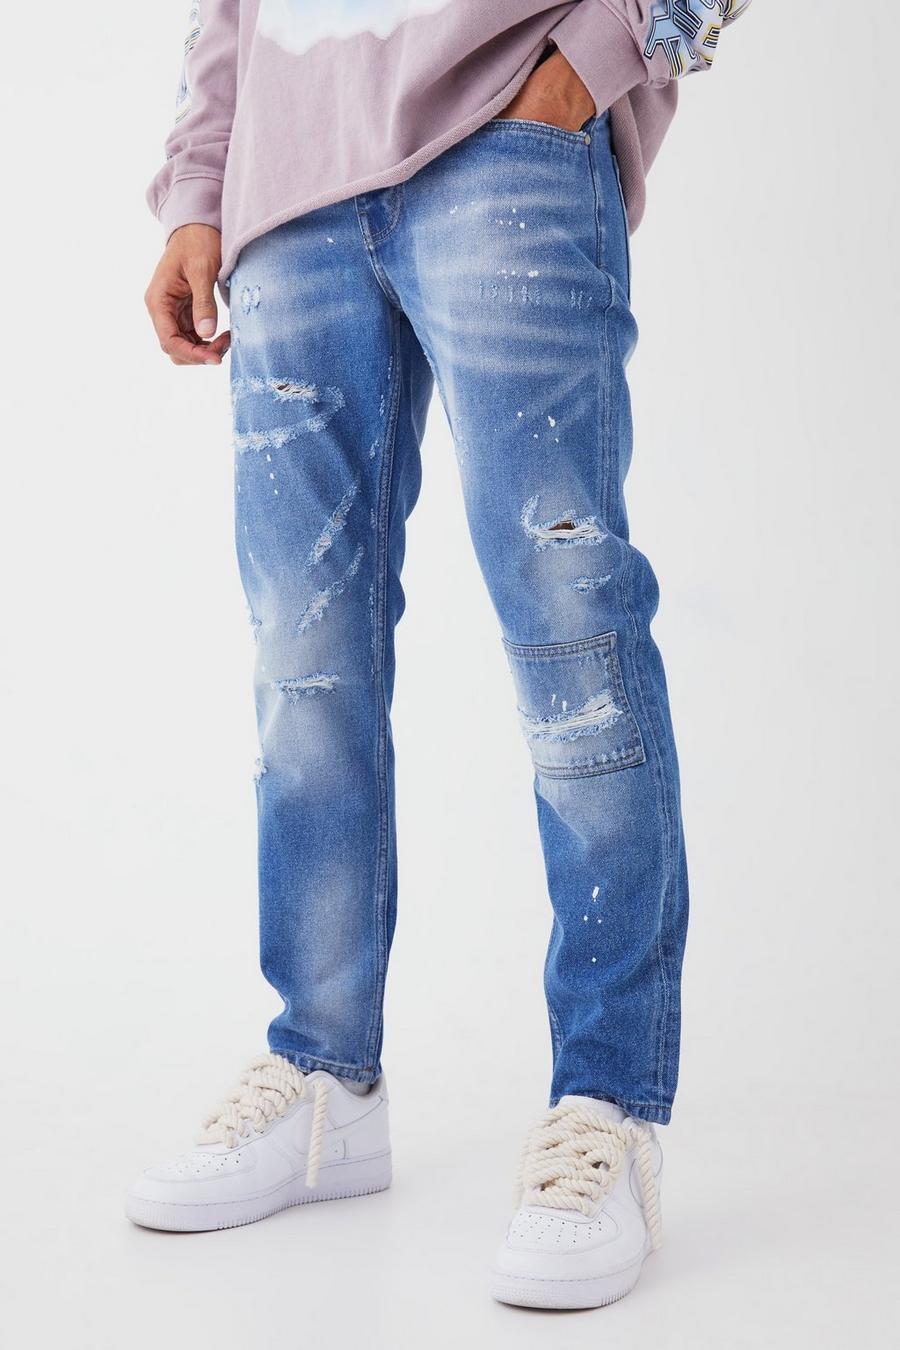 Jeans Slim Fit in denim rigido con strappi sul ginocchio e dettagli dipinti all over, Light blue